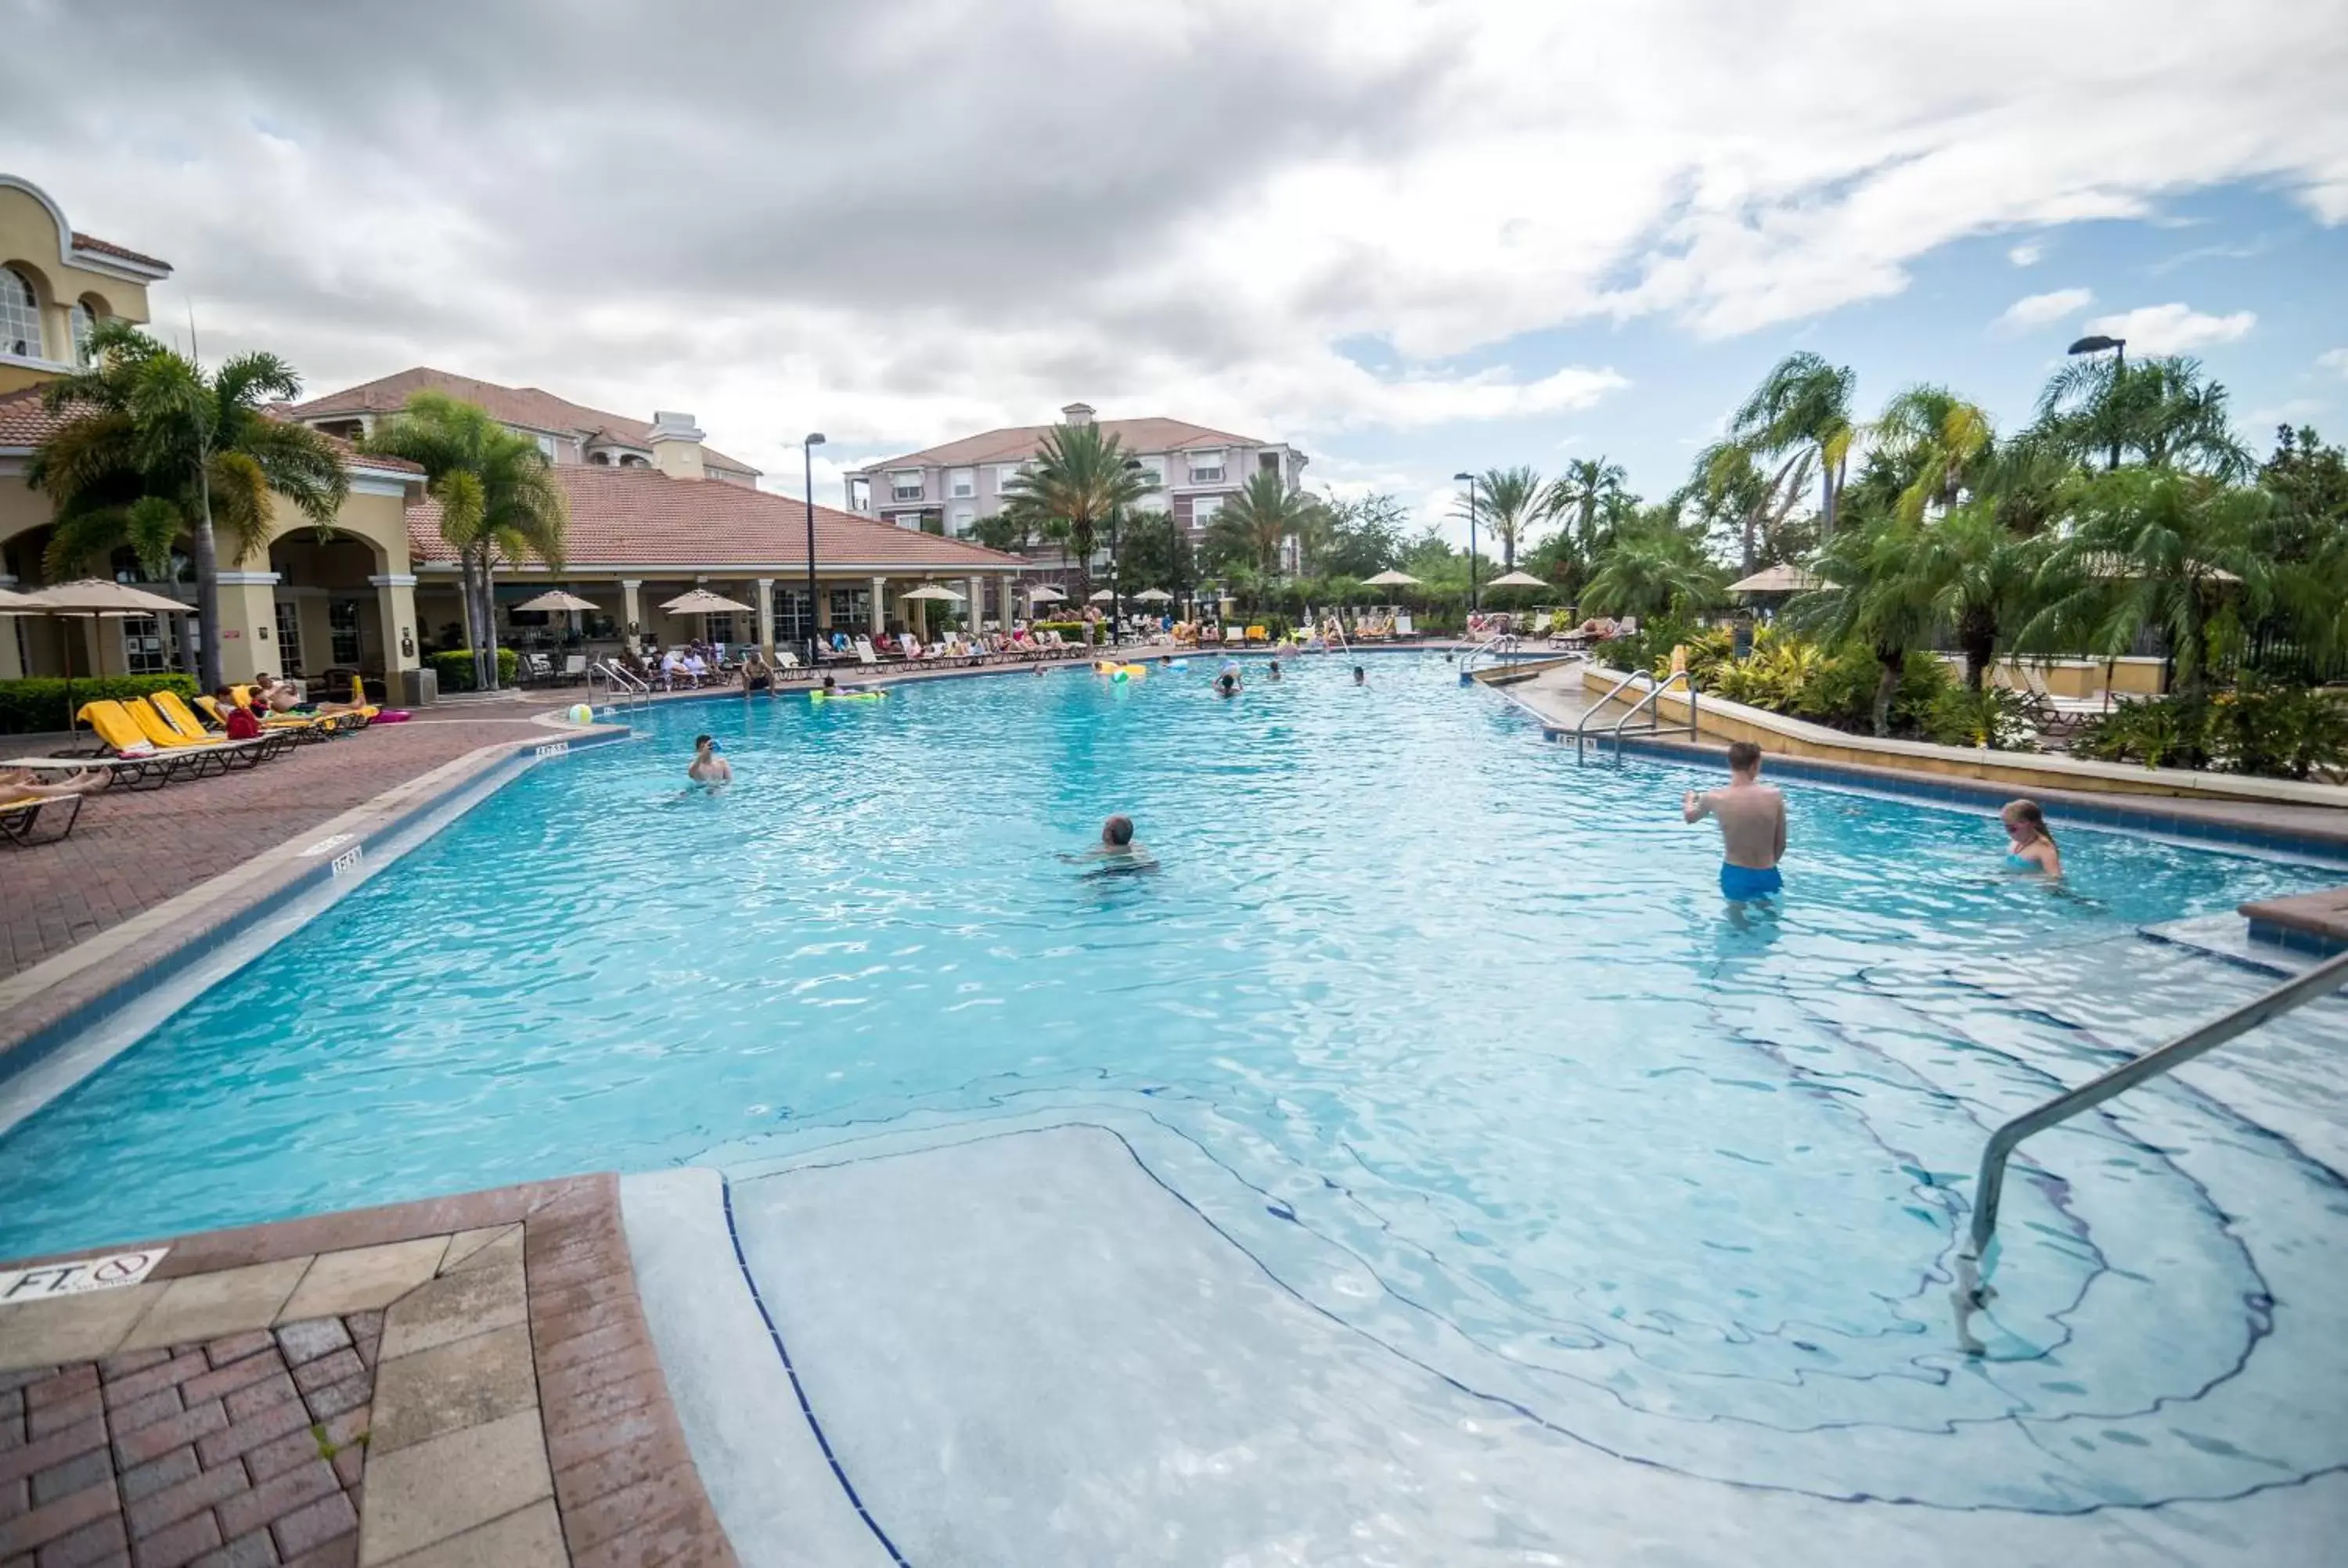 Swimming Pool in Orlando Escape